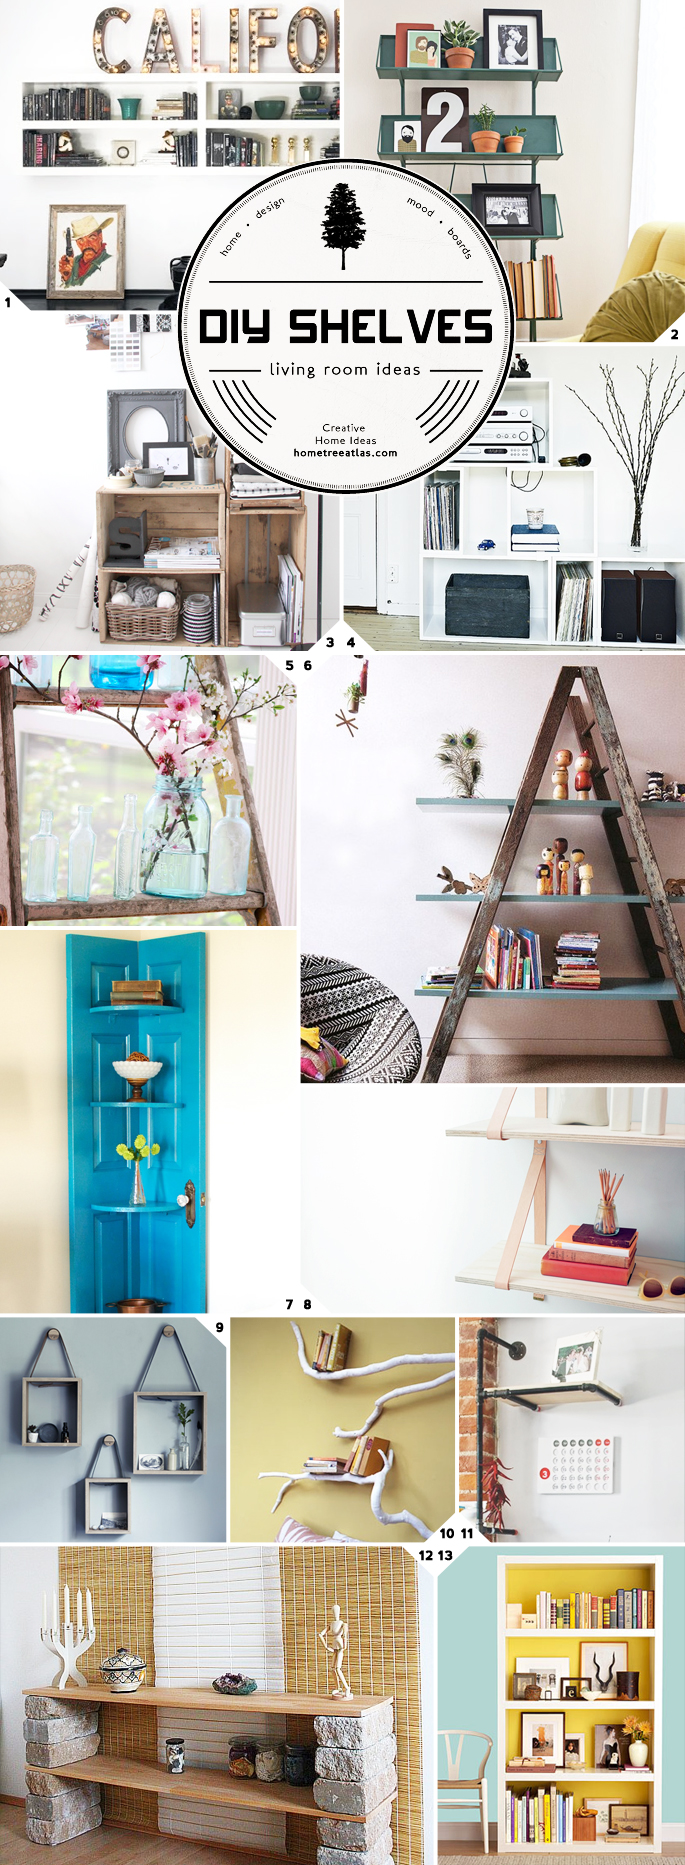 Creative DIY Ideas for Living Room Shelves | Home Tree Atlas